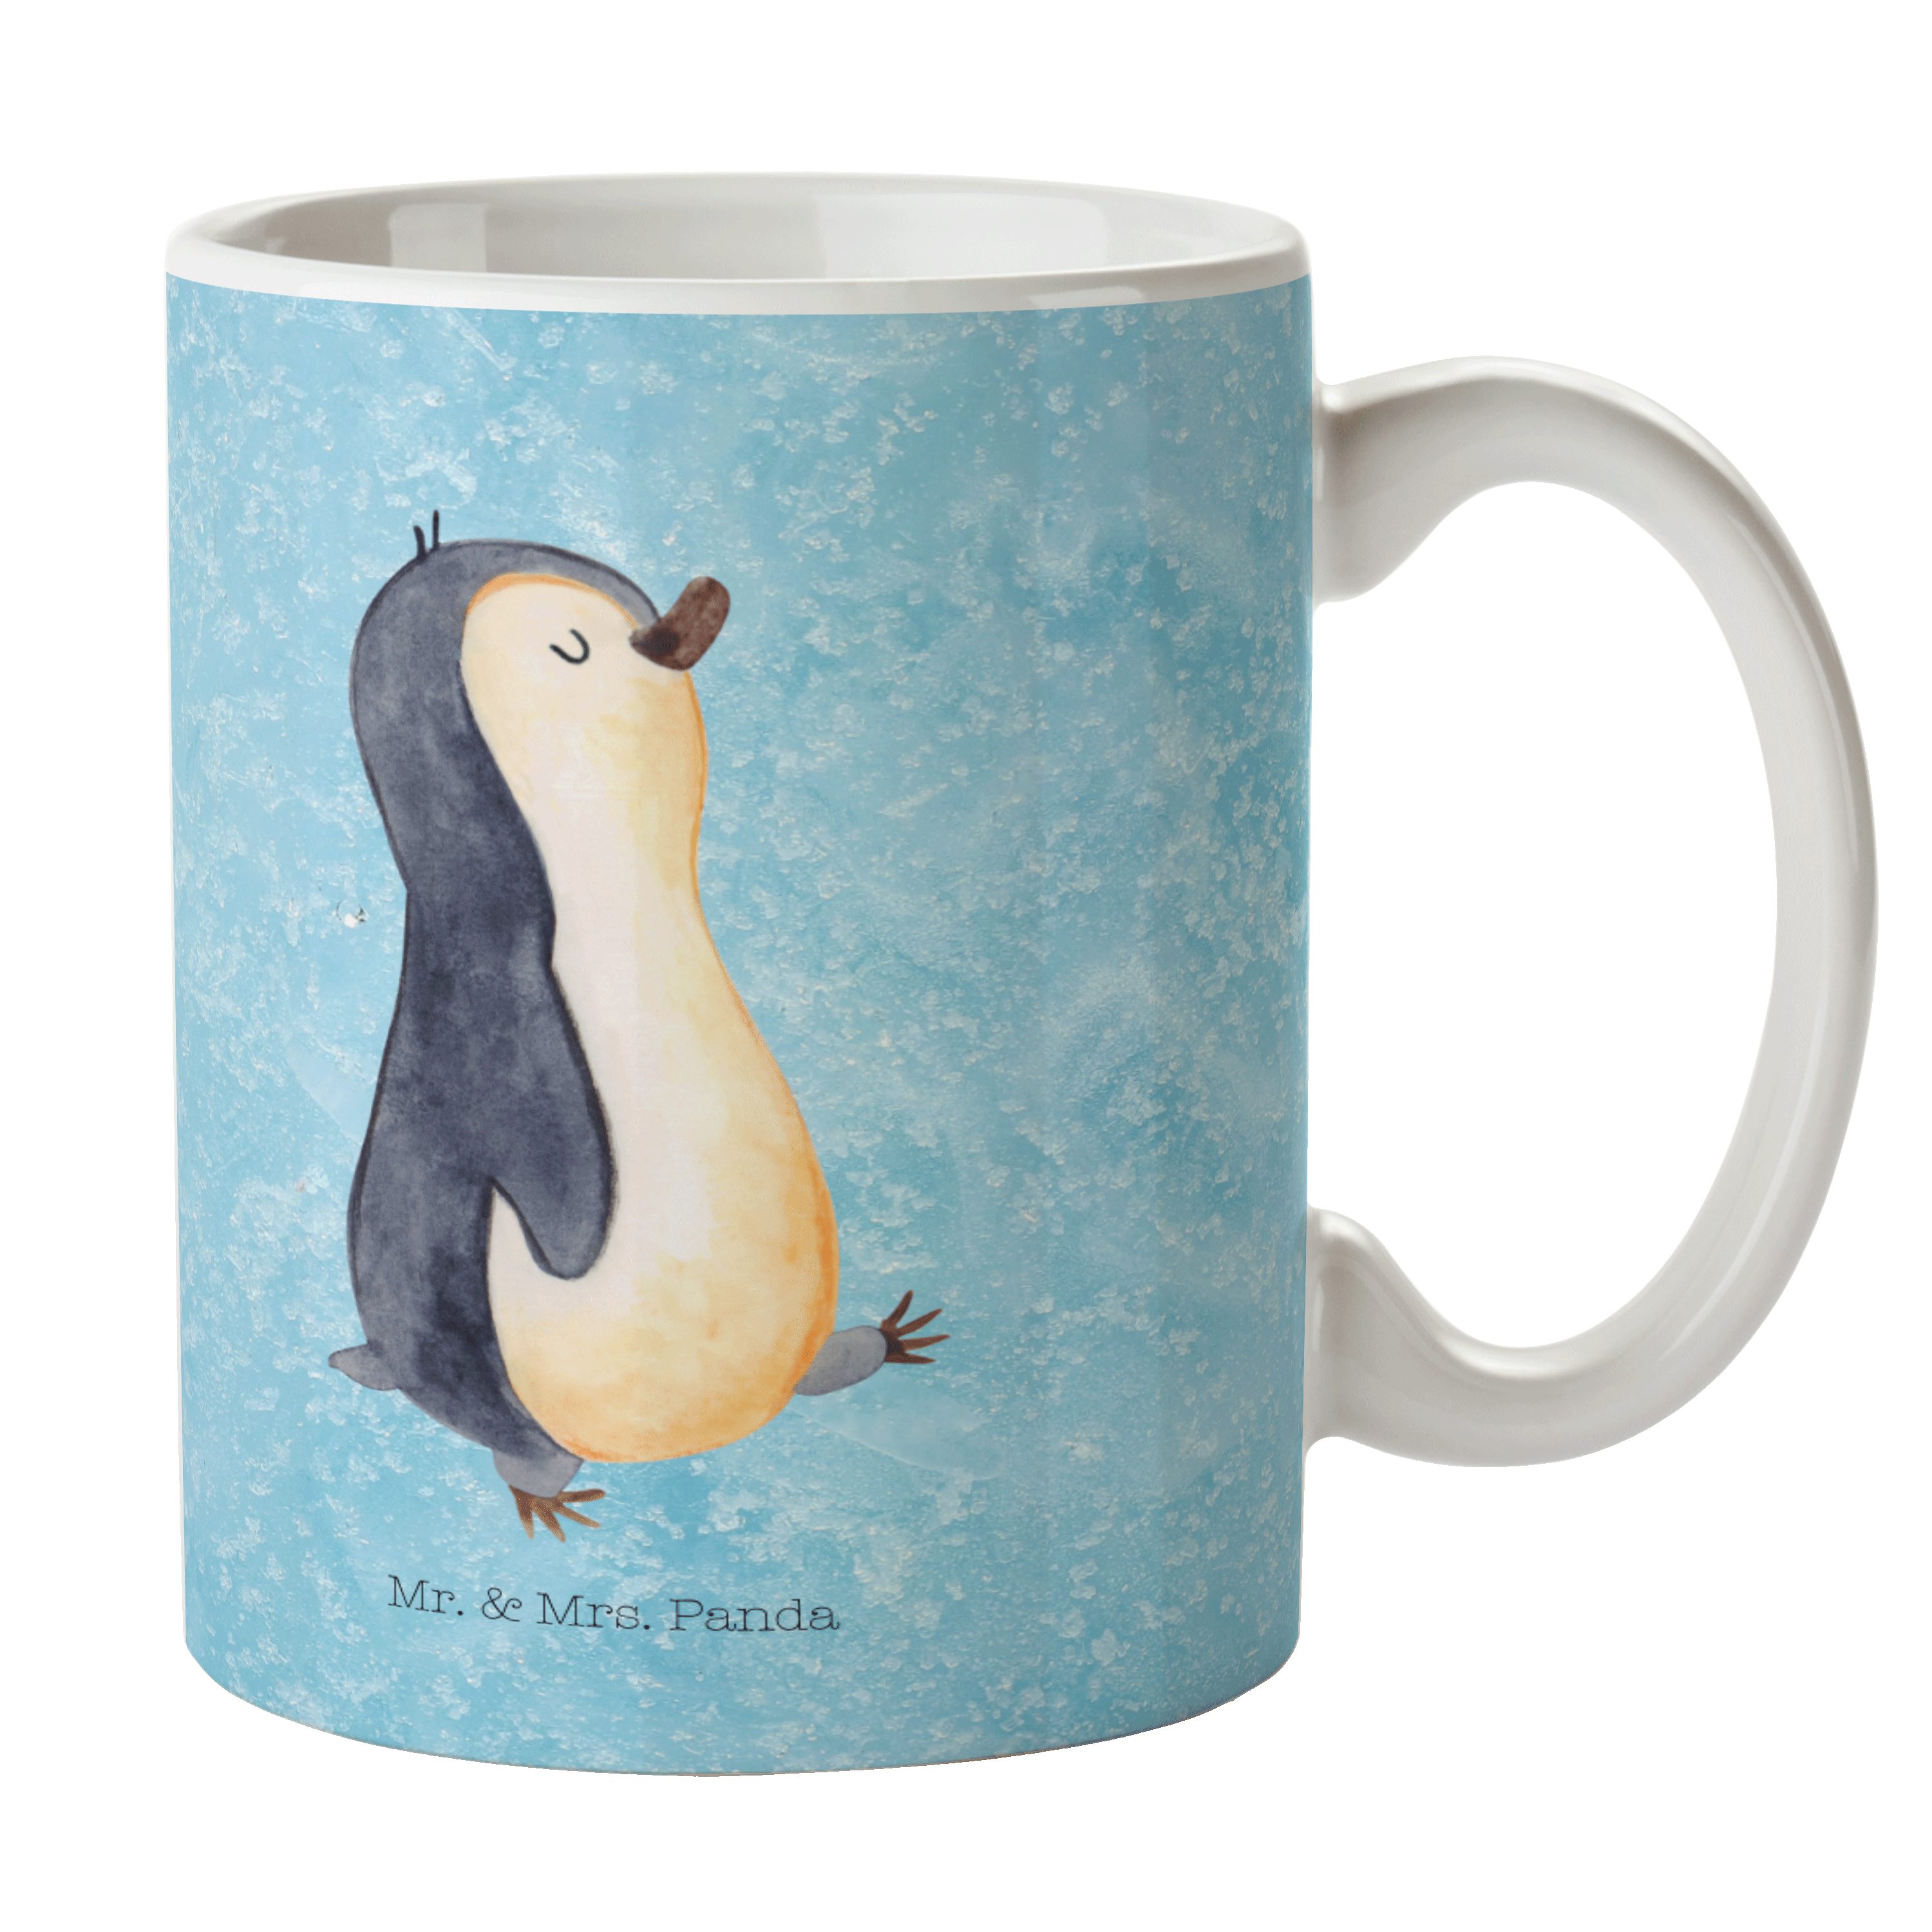 Mr. & Mrs. Panda Tasse Pinguin marschierend - Eisblau - Geschenk, Keramiktasse, spazieren, T, Keramik